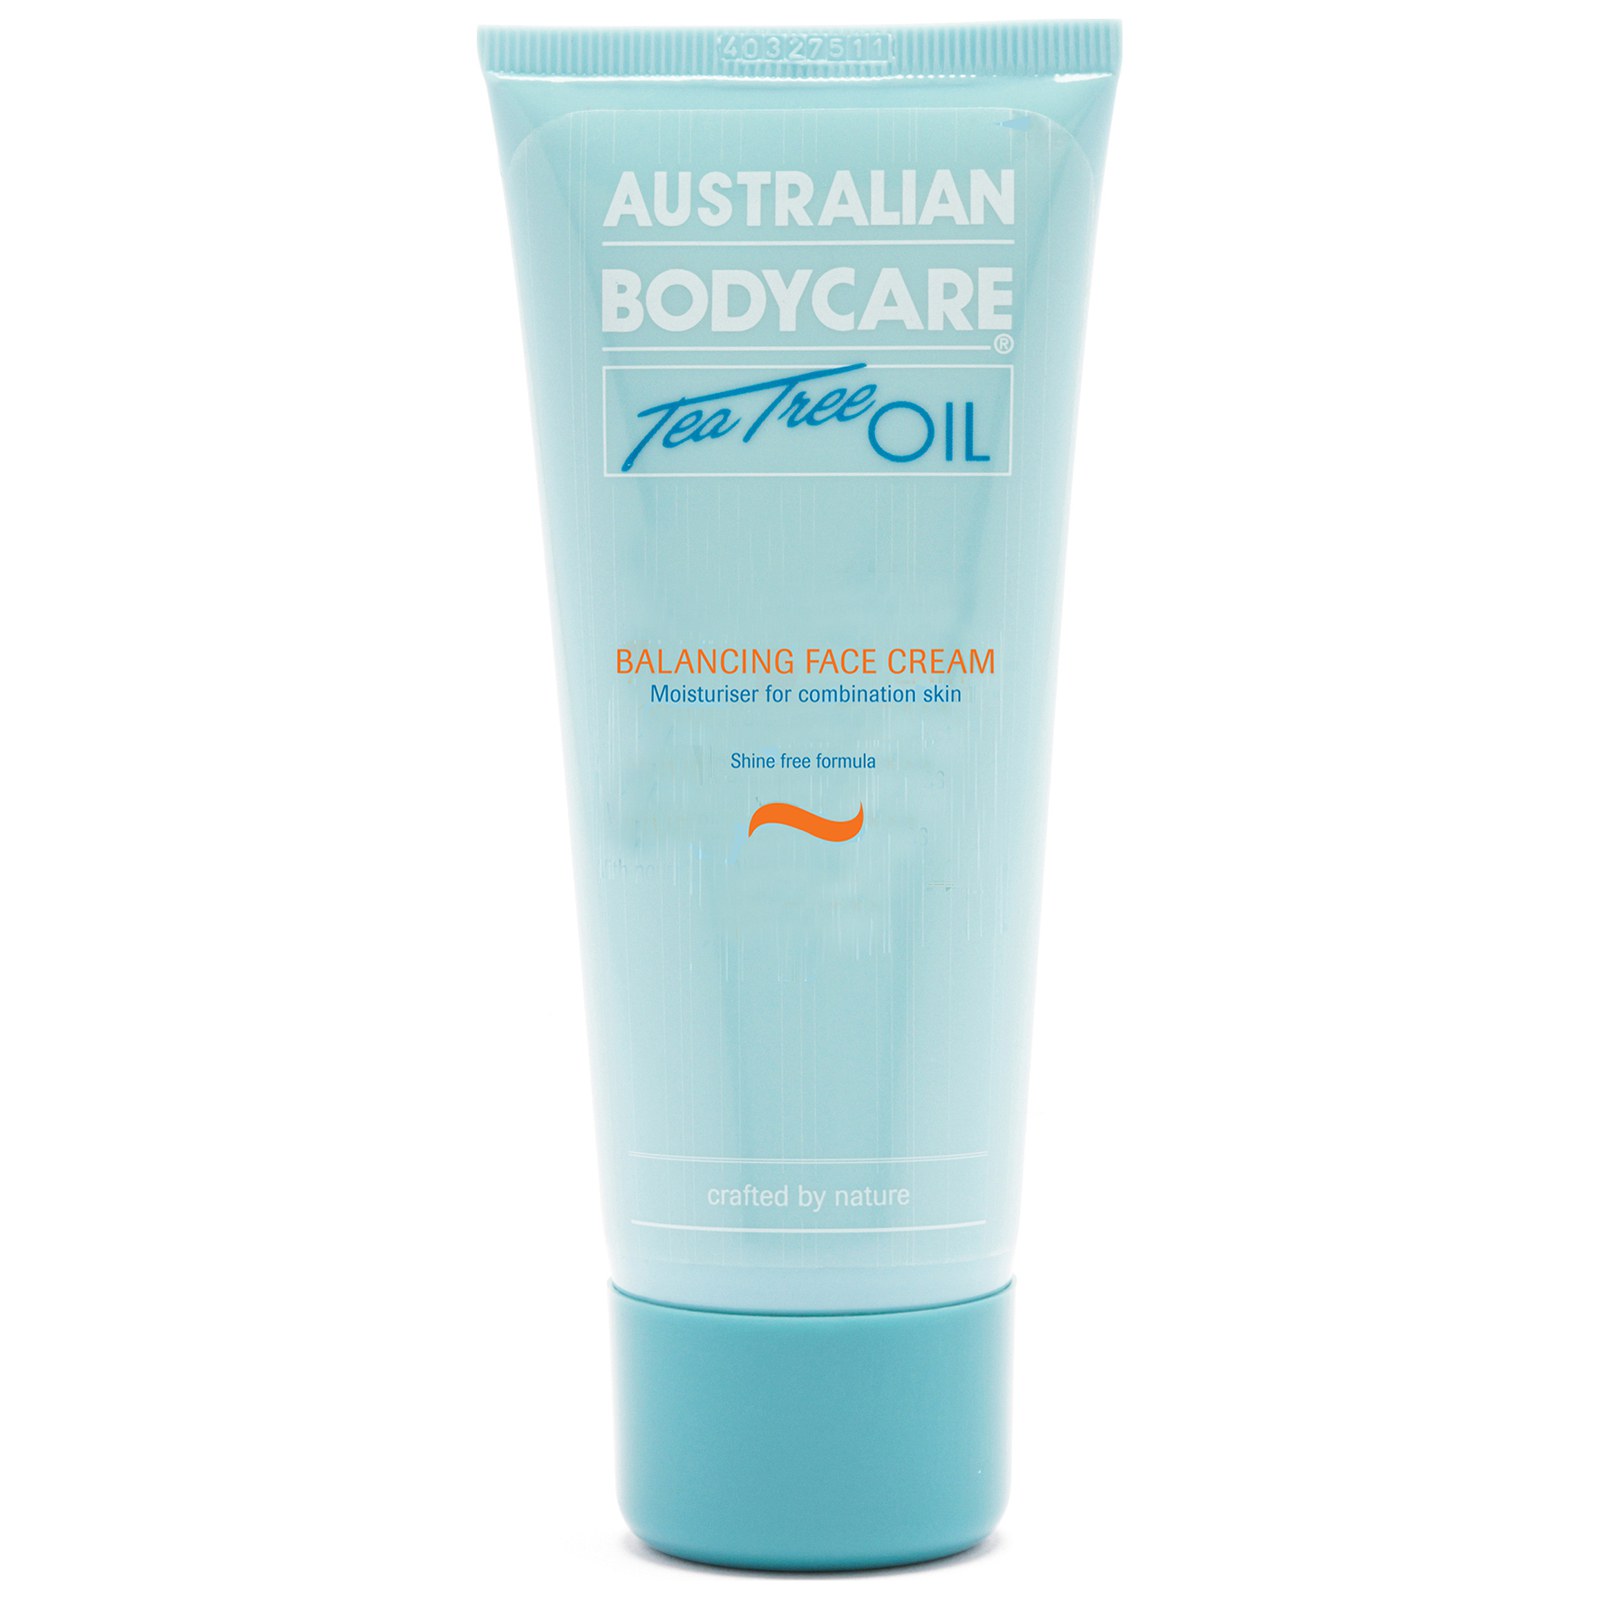 Crema facial Balancing Face Cream de Australian Bodycare (50 ml)